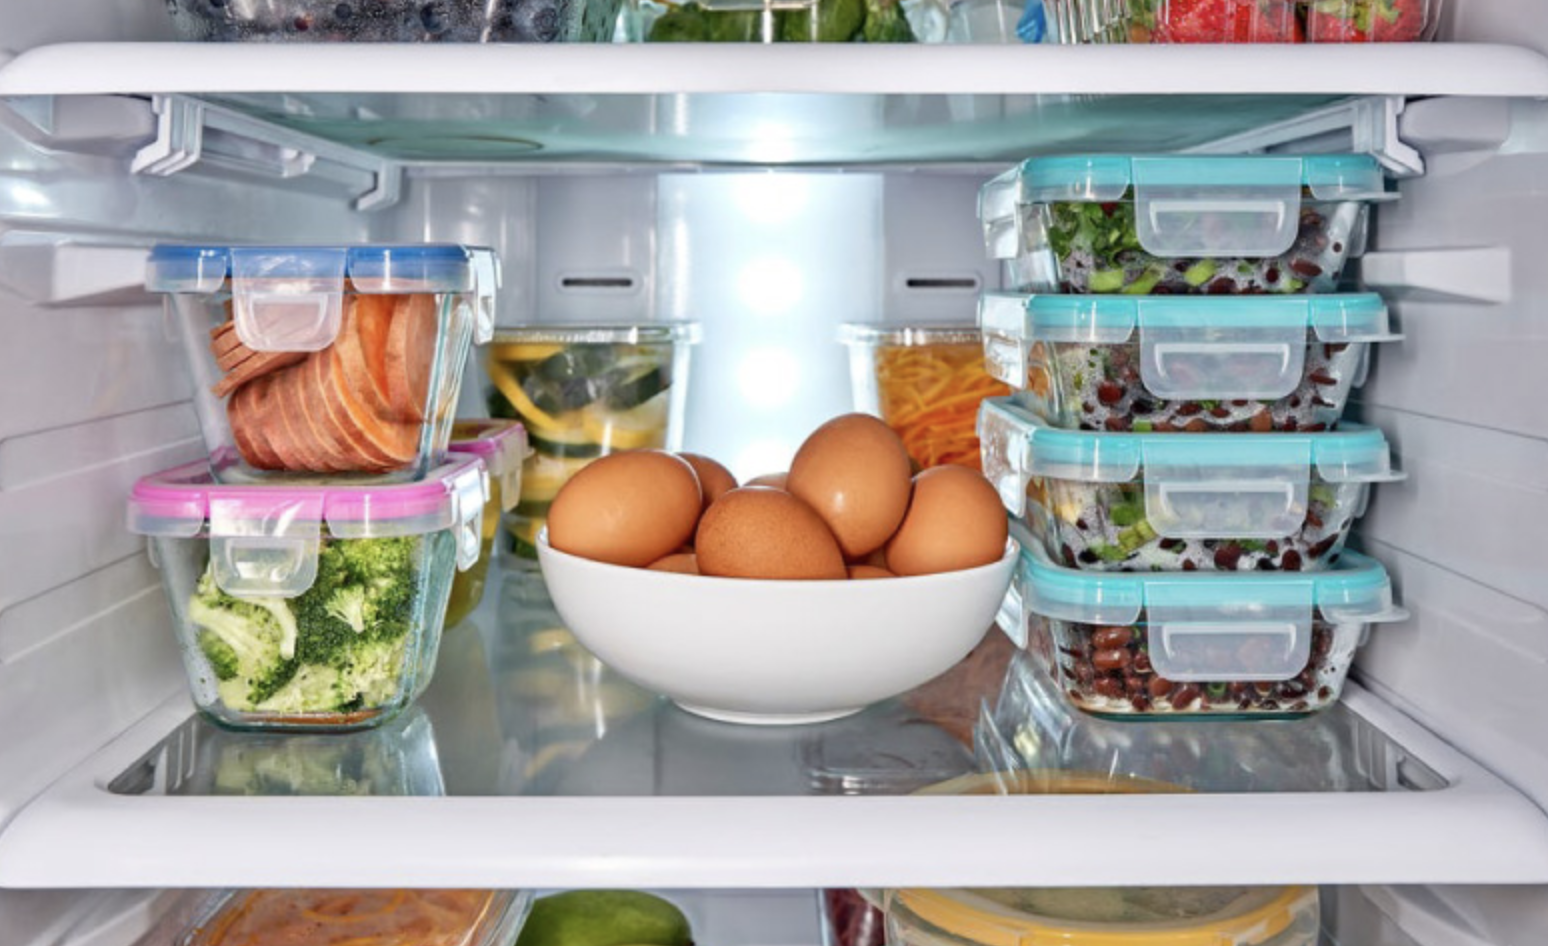 Лапша в холодильнике. Хранение в холодильнике. Холодильник с продуктами. Хранение продуктов в холодильнике. Проддуктыв холодильнике.